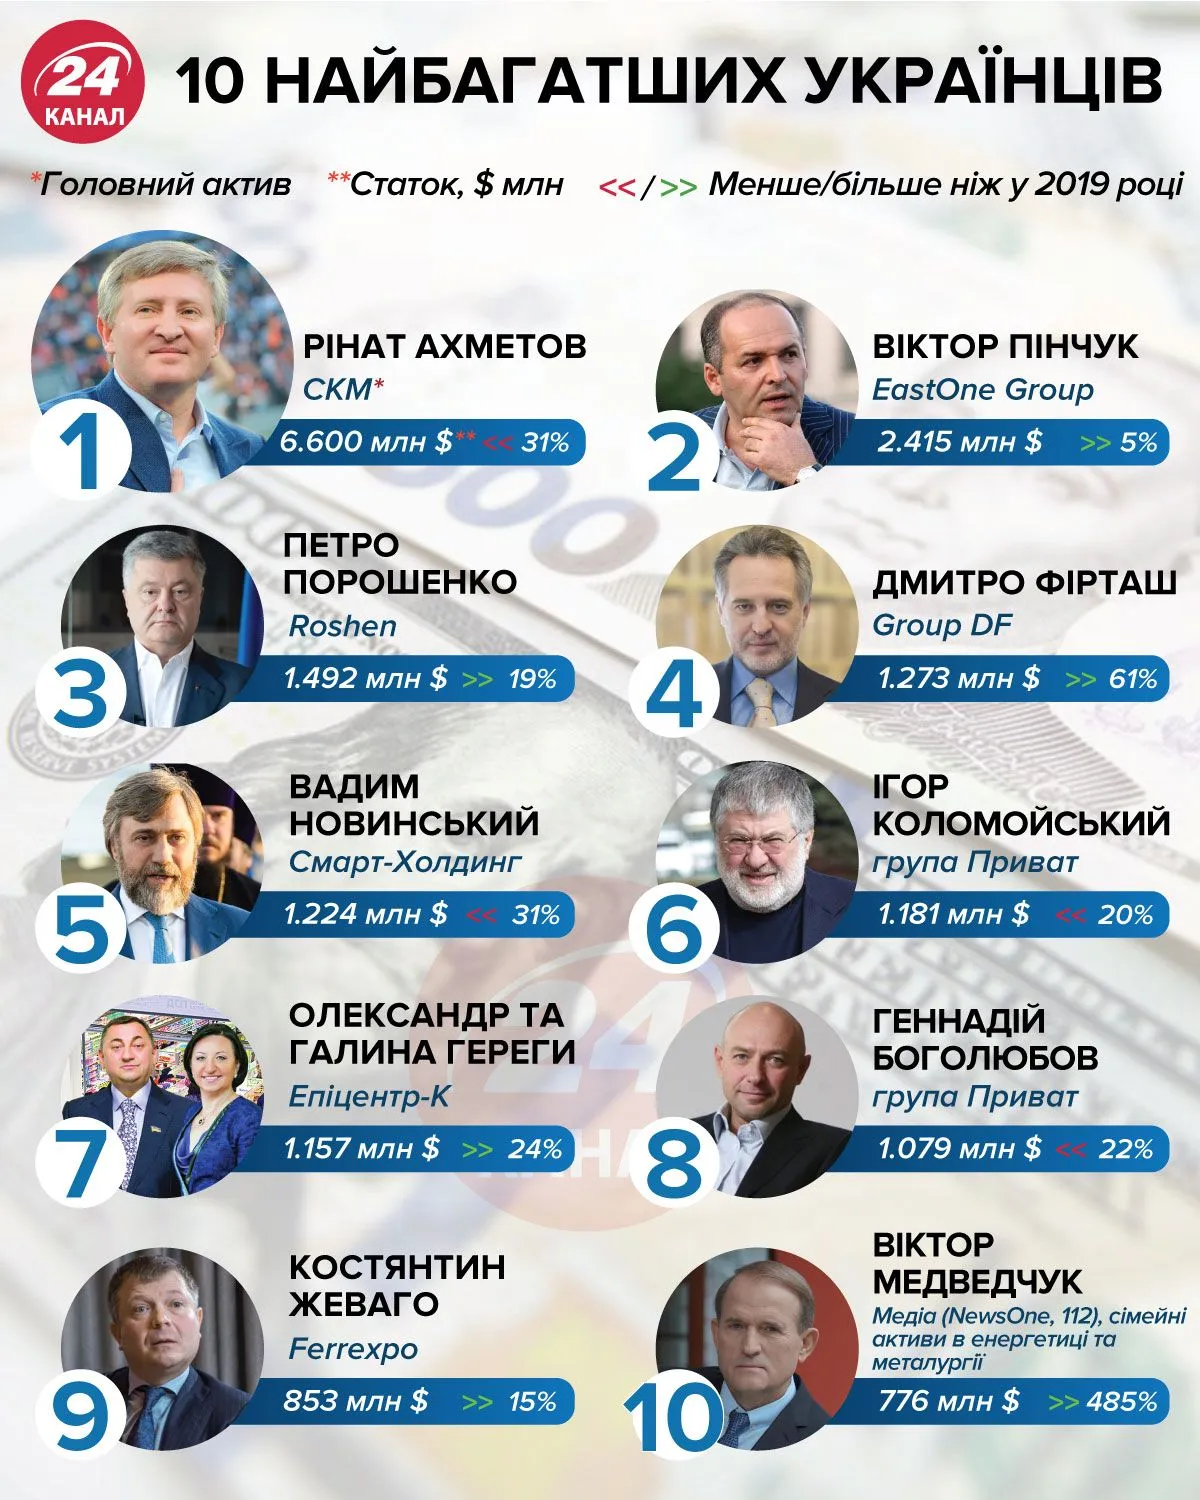 10 самых богатых украинский инфографика 24 канал